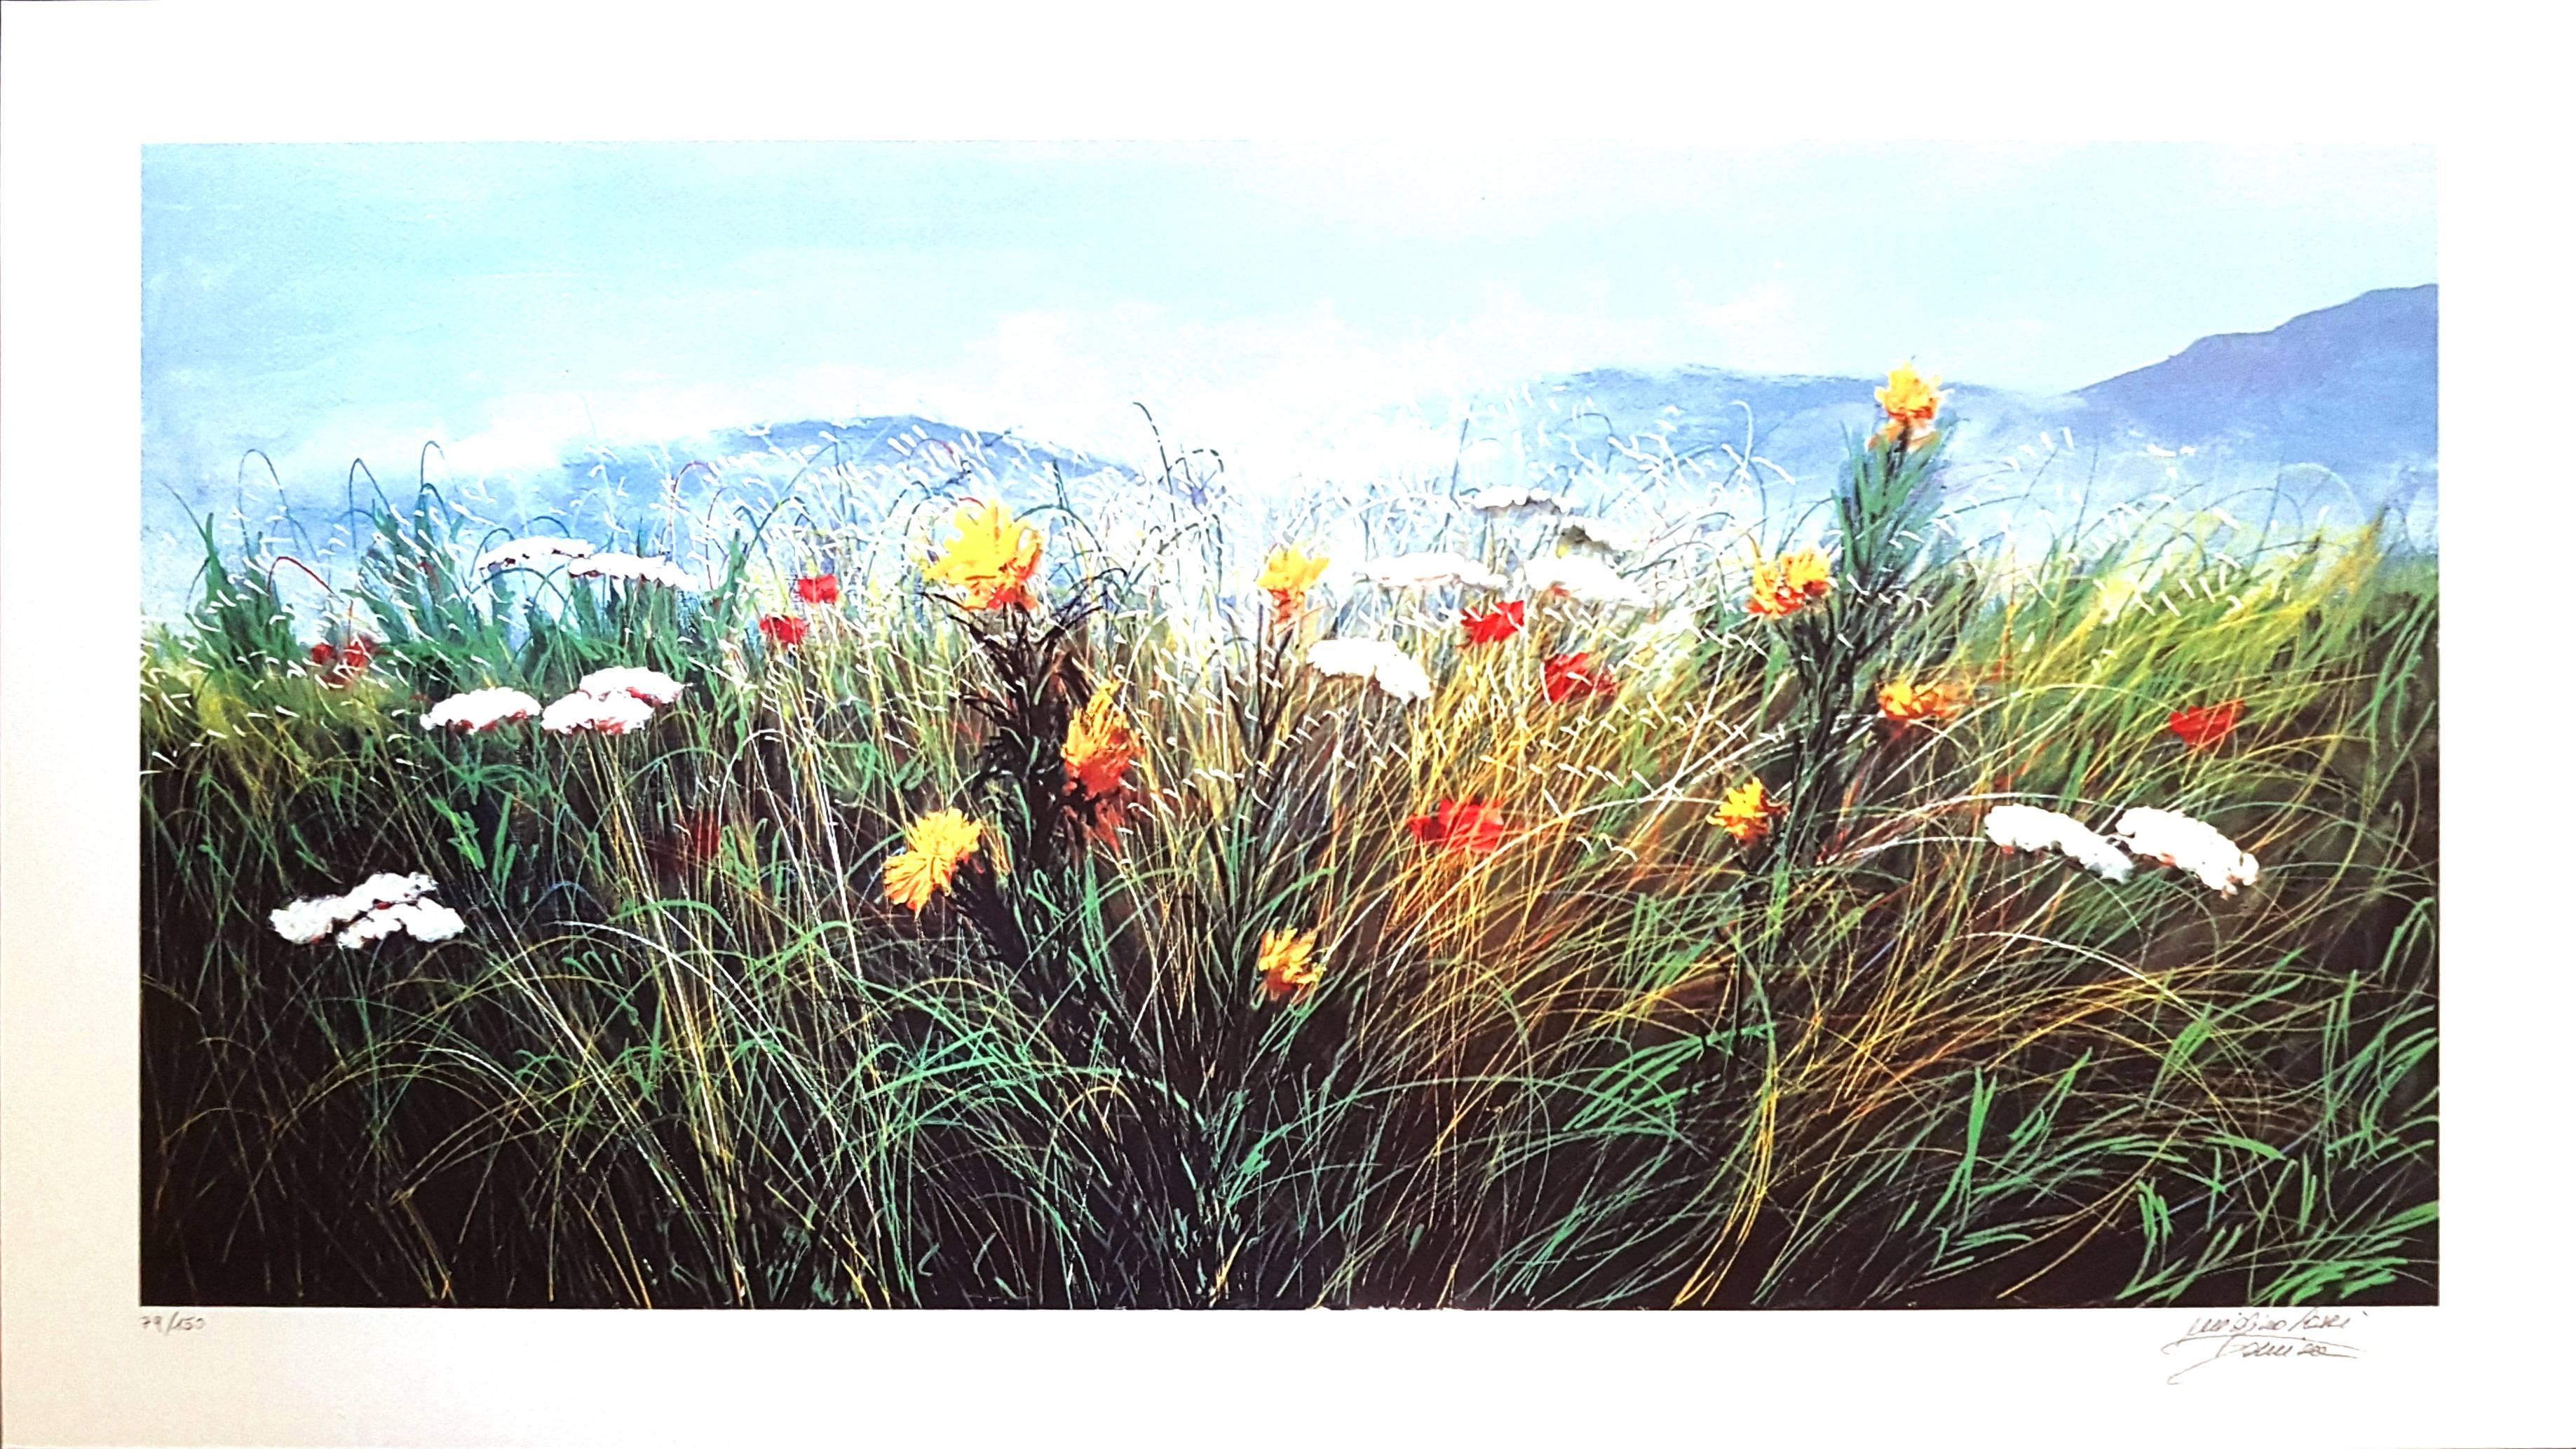 Luigino Rossi Garzione Landscape Print - Wildflowers - Original Screen Print by L. Rossi Garzione - 1980s